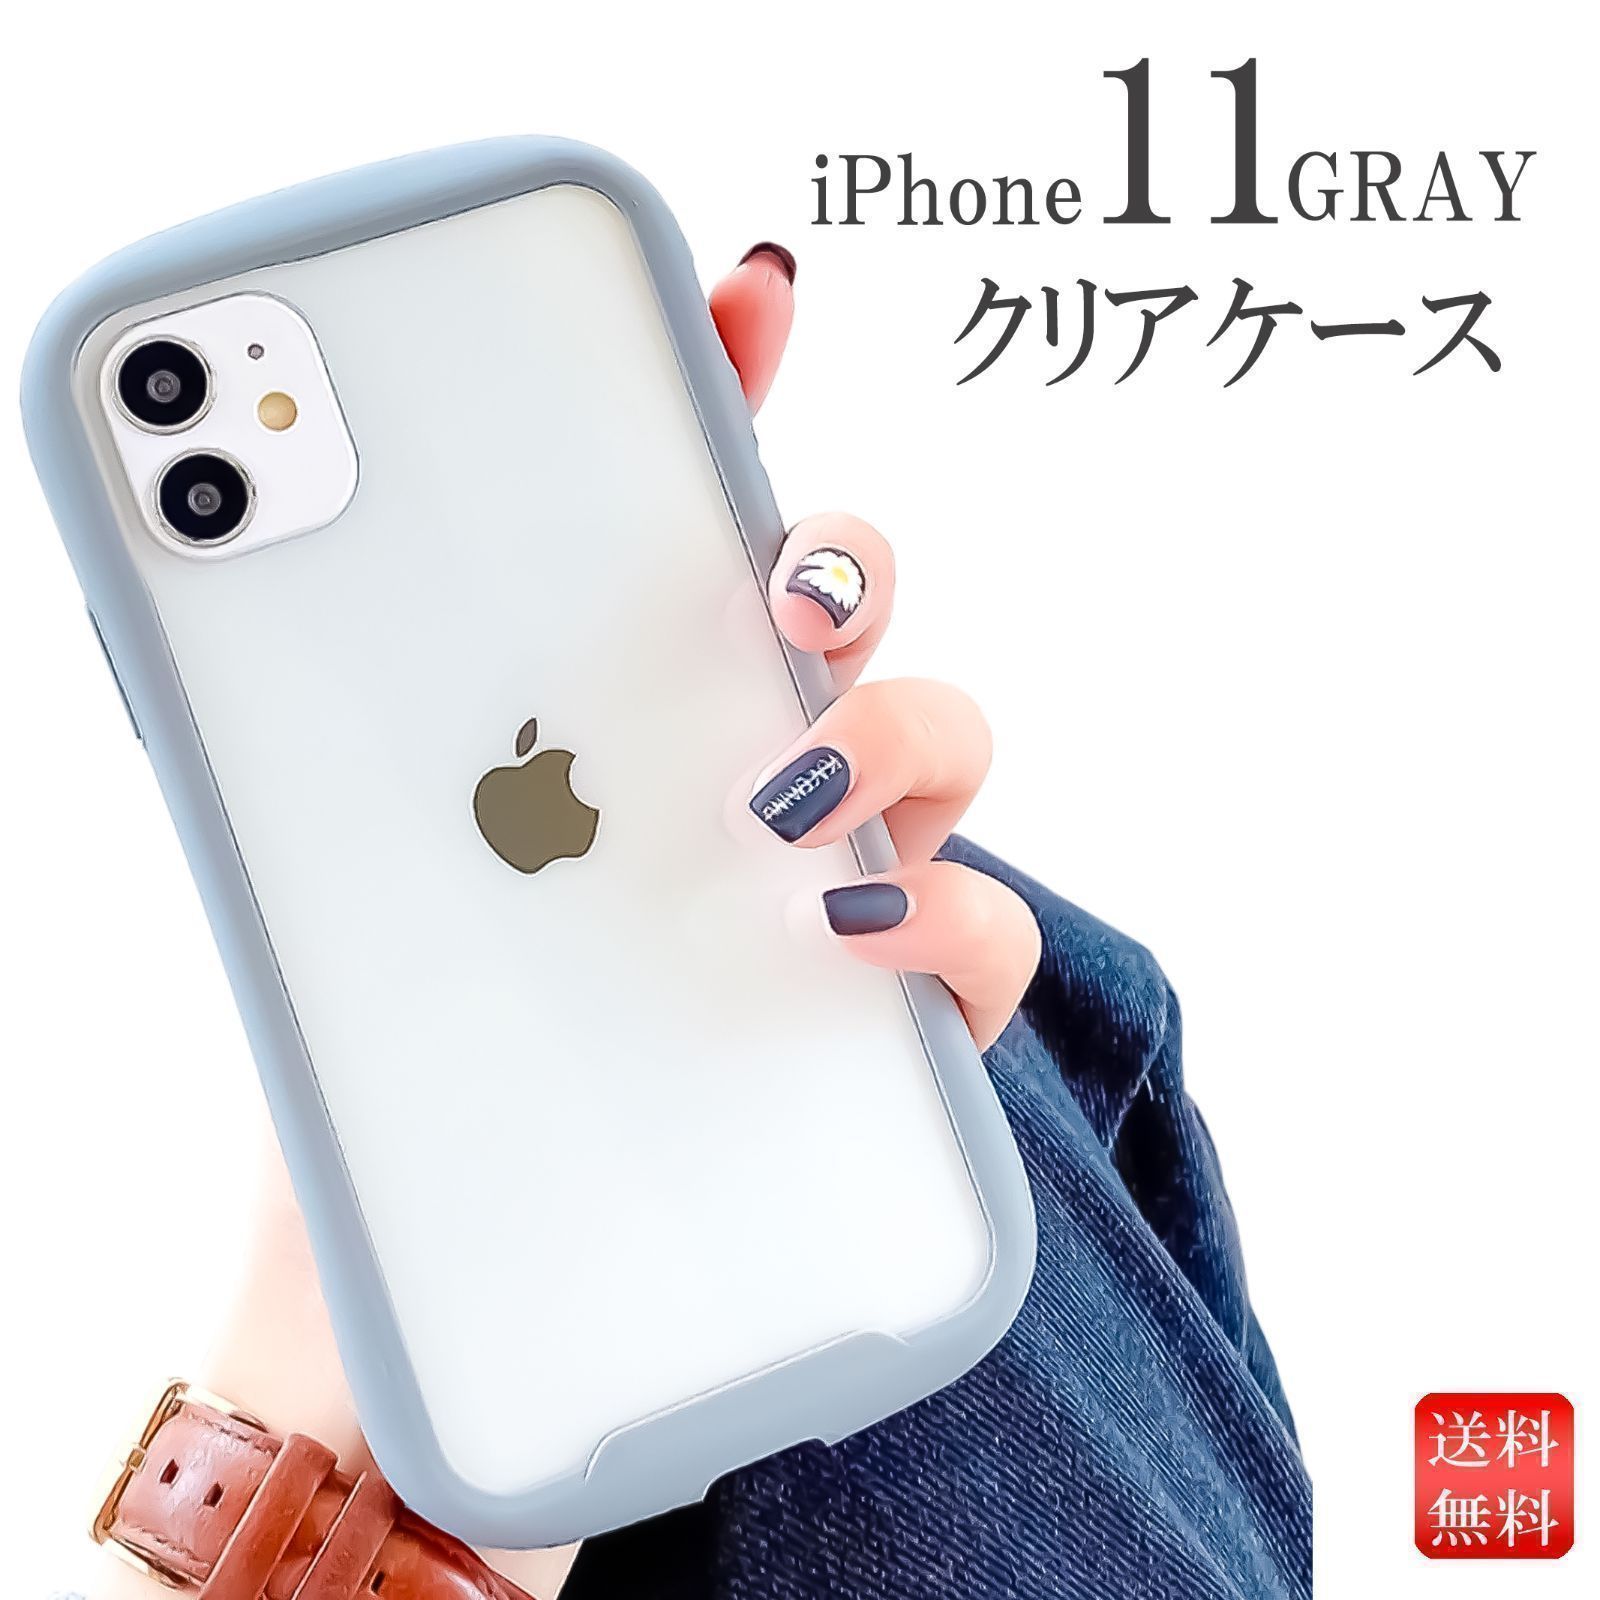 夏セール開催中 iPhoneケース iFace アイフェイス iPhone11 グレー